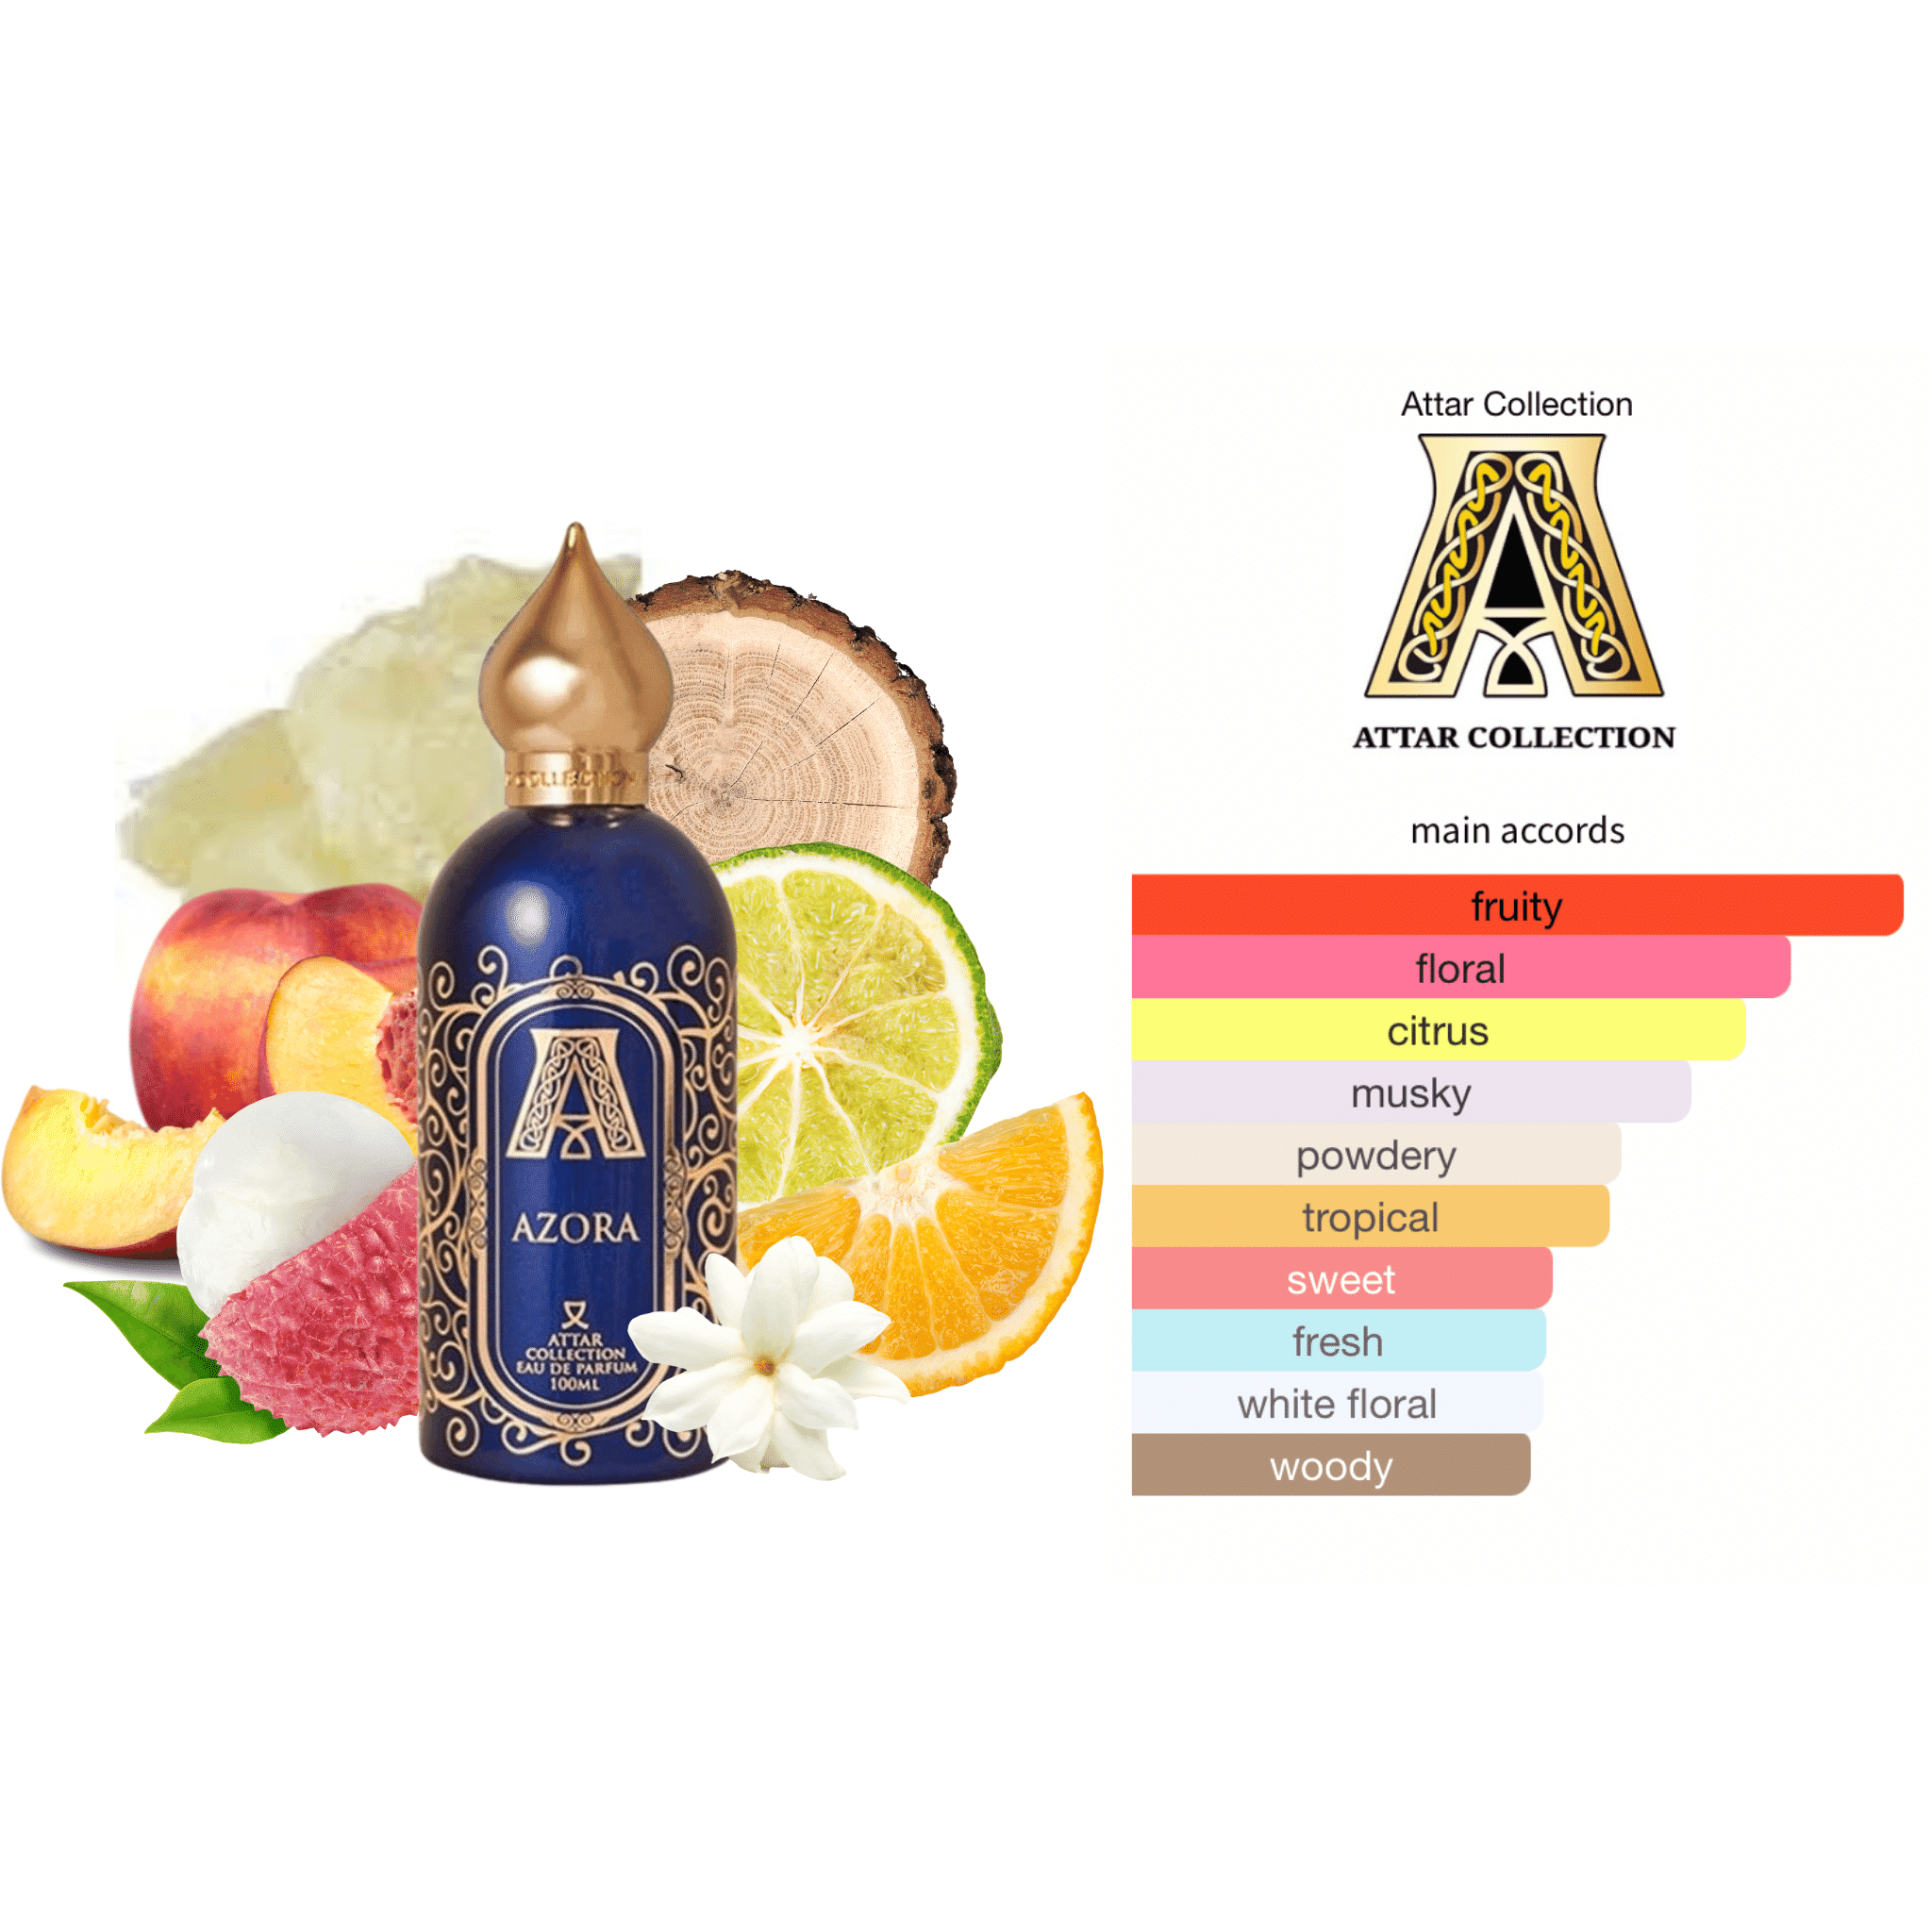 Azora Attar Collection perfume